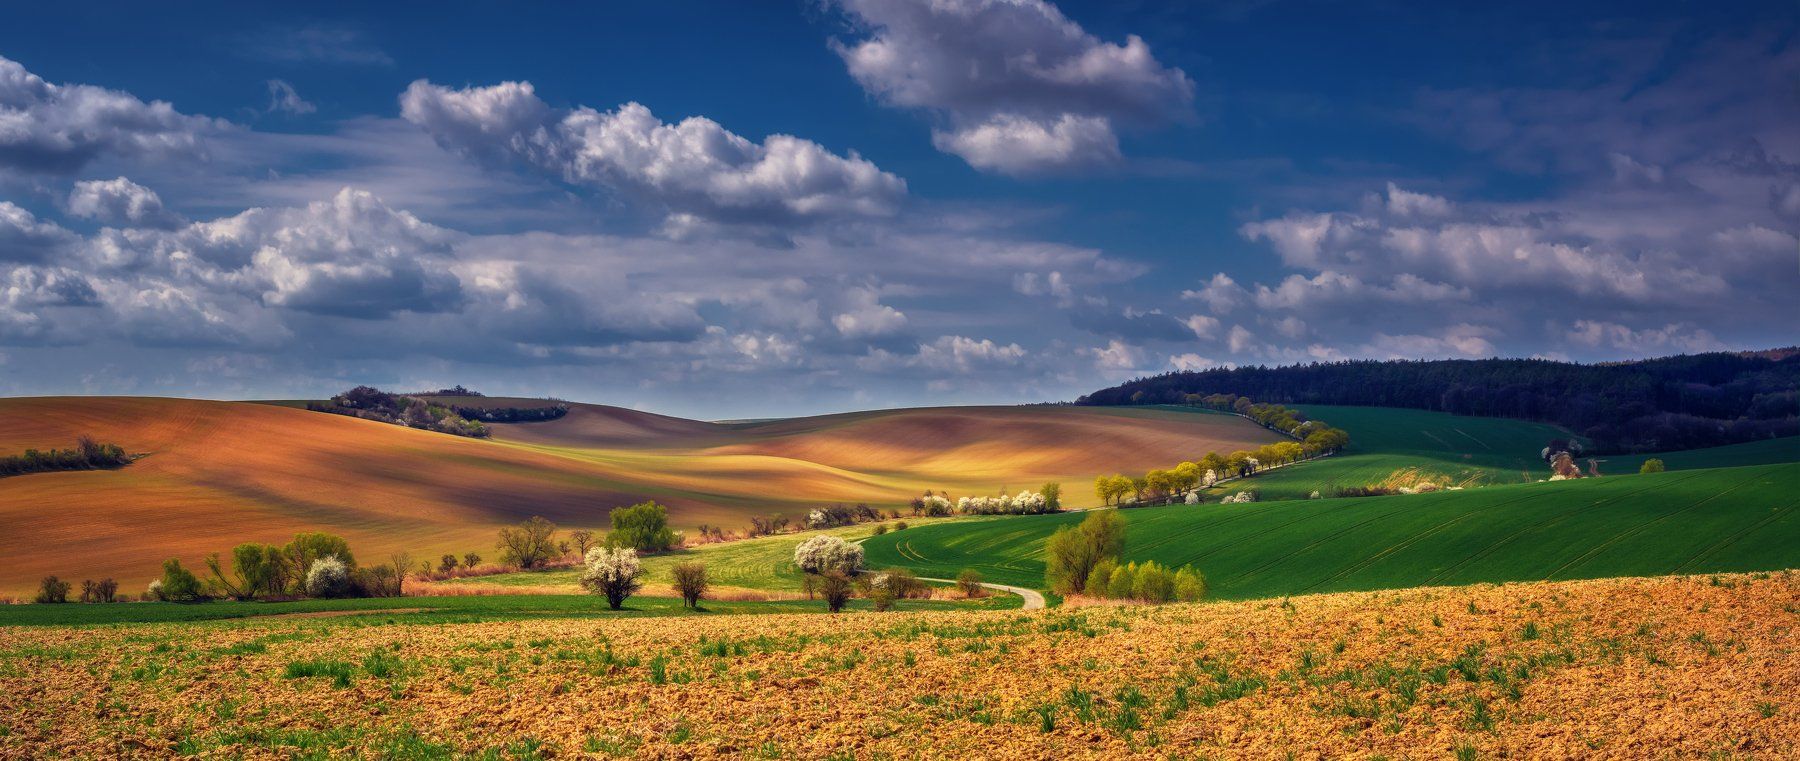 Чехия Южная Моравия небо облака весна поля пейзажи путешествия природа деревья трава, Андрей Ожерельев